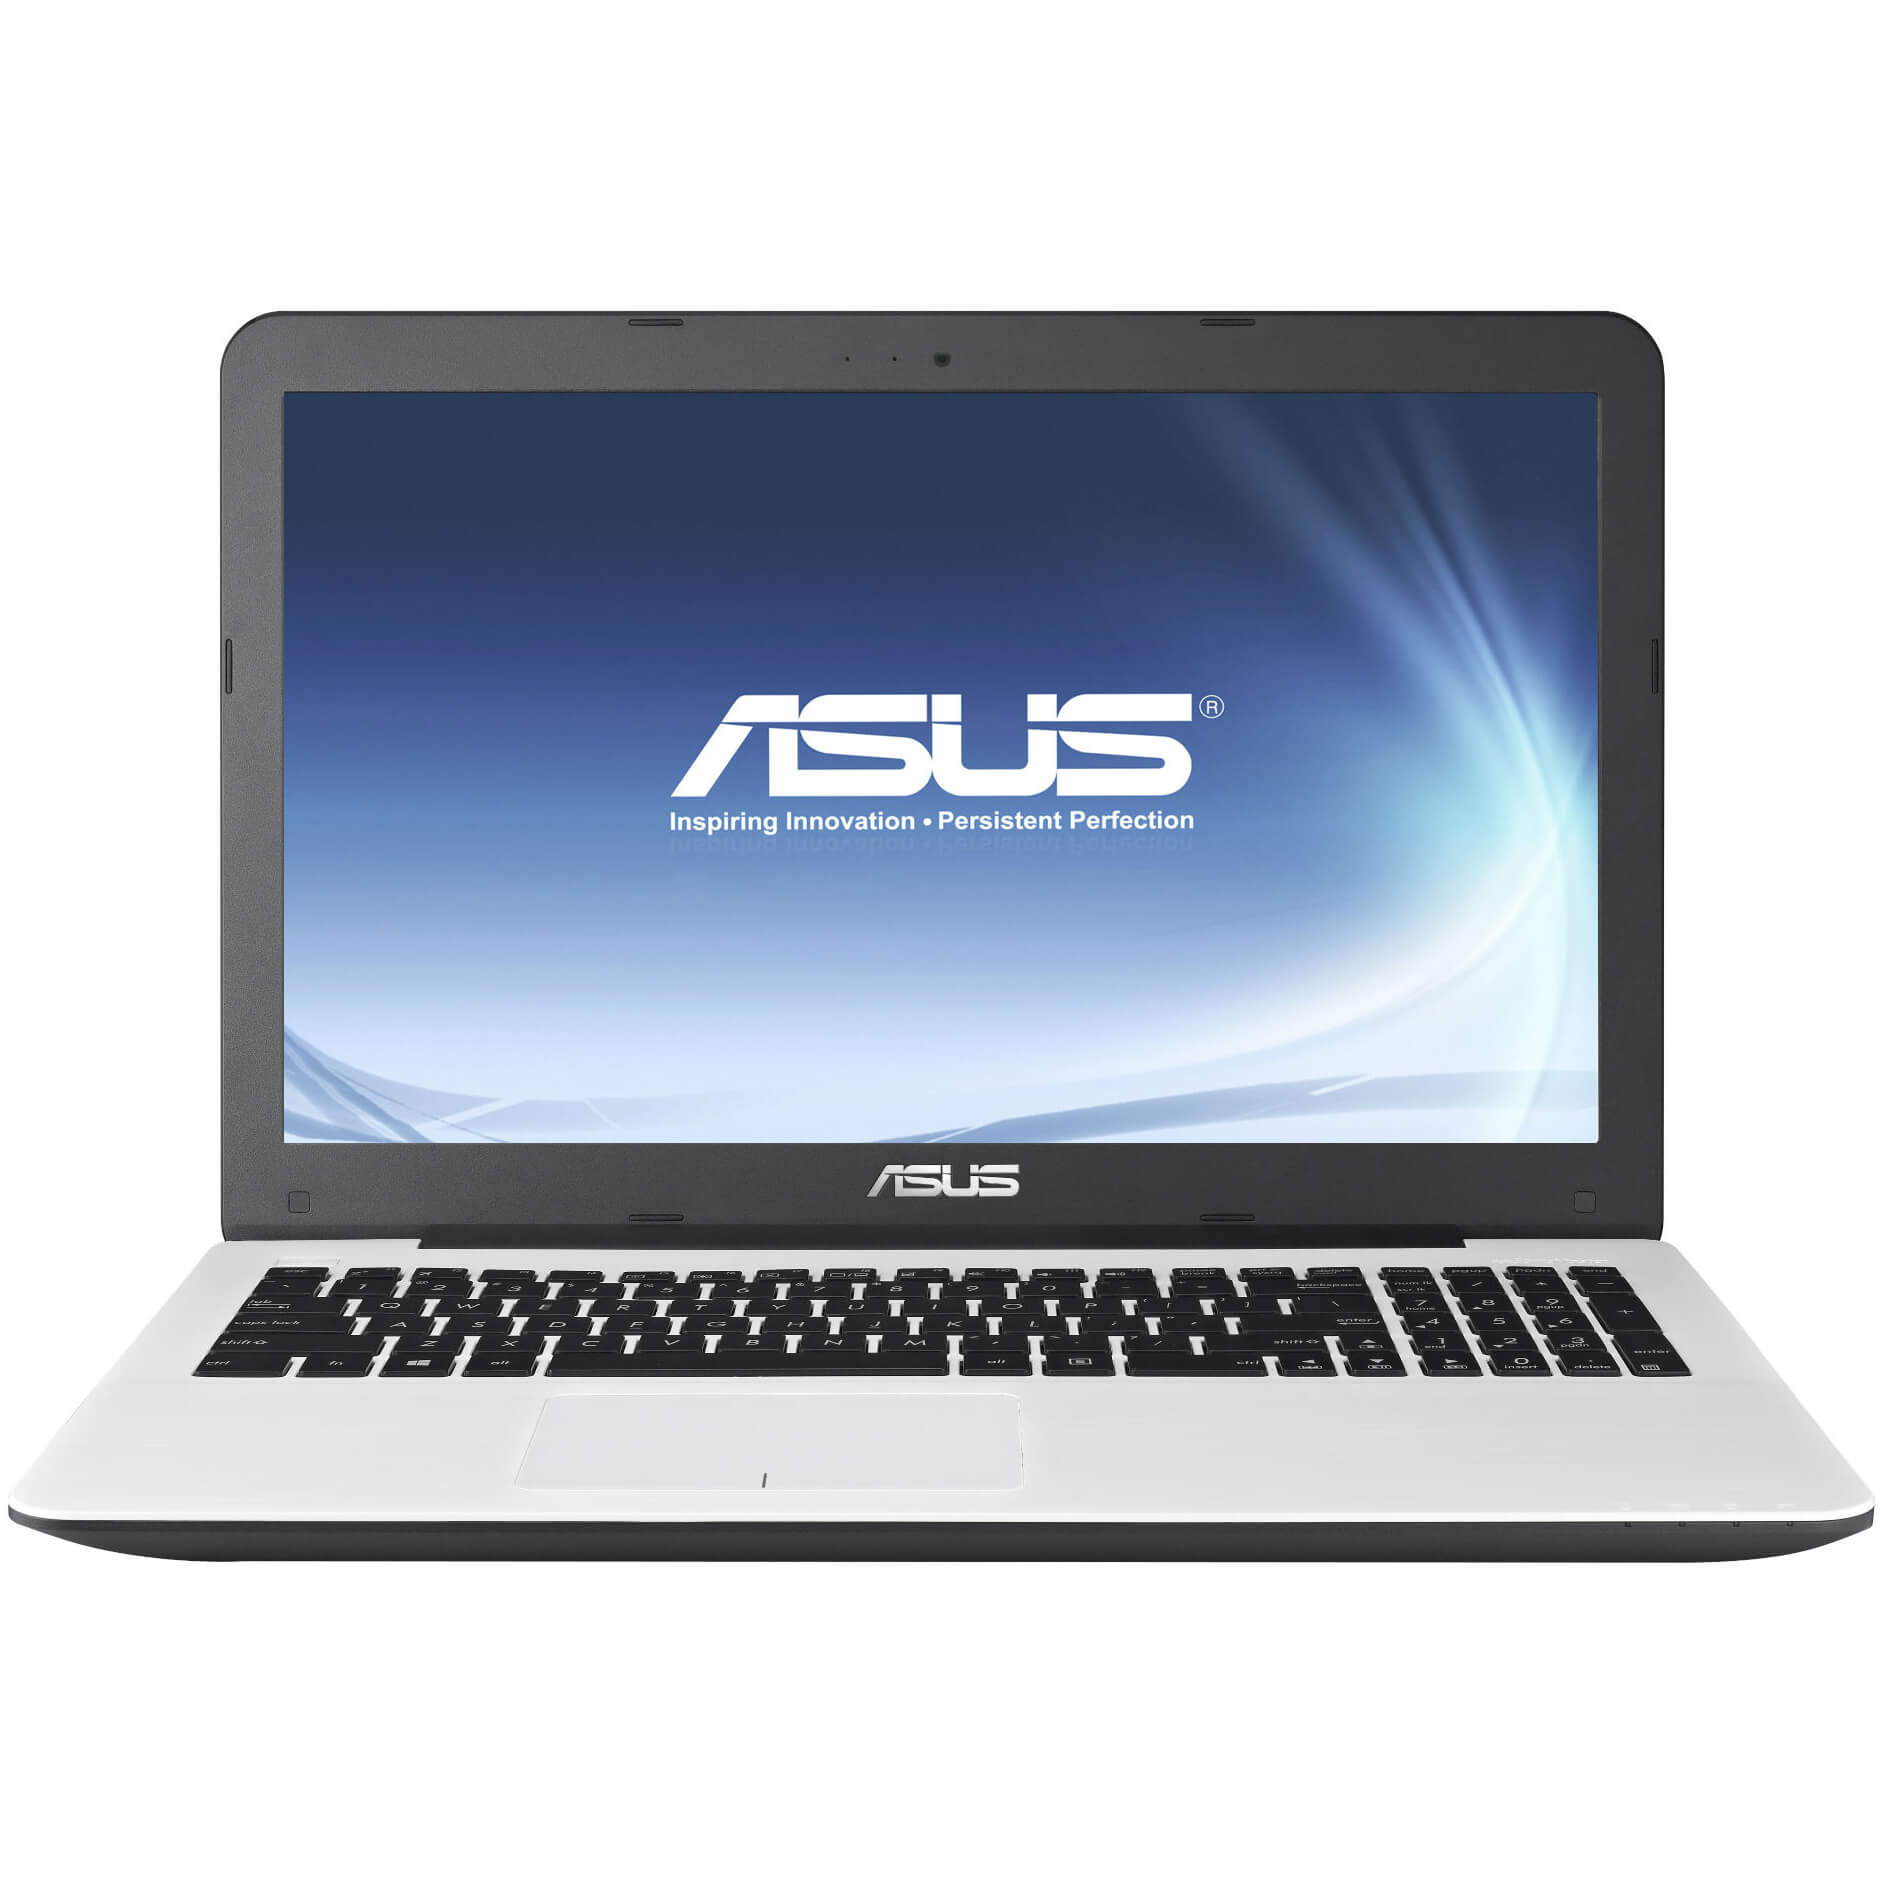  Laptop Asus X555LD-XX063D, Intel Core i3-4030U, 4GB DDR3, HDD 500GB, nVidia GeForce 820M 2GB, Free DOS 